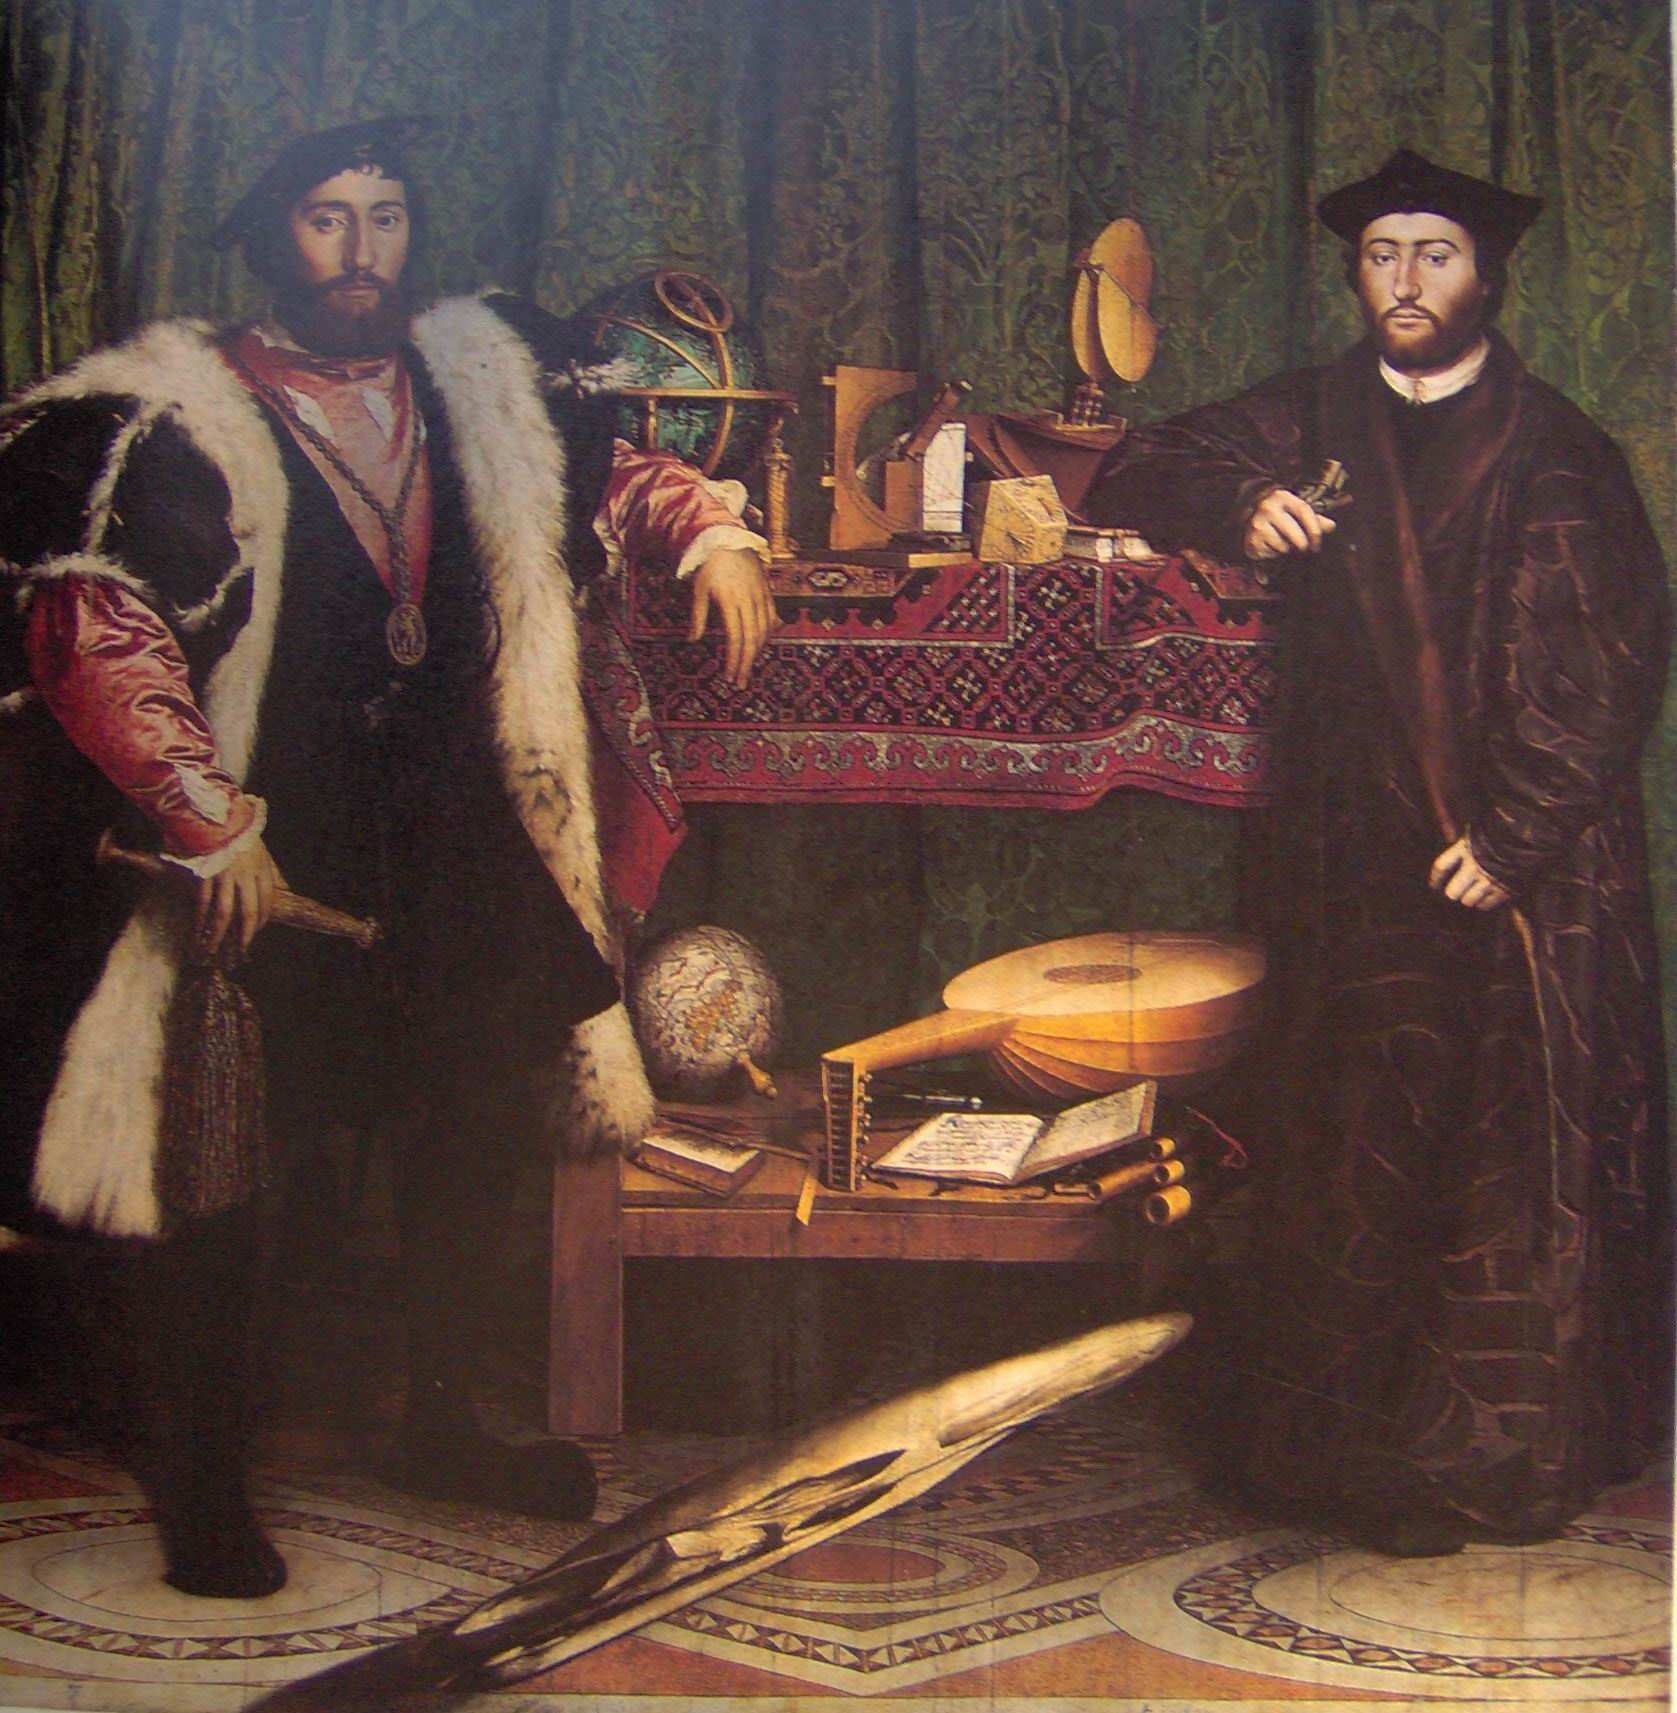 Τίτλος: Οι Γάλλοι πρέσβεις Καλλιτέχνης: Χανς Χολµπάιν, ο νεότερος Χρονολογία: 1533 Υλικό: Λάδι και τέµπερα σε ξύλο Περιγραφή: Παρόλο που γεννήθηκε στην Βασιλεία της Ελβετίας, ο Χολπµάιν διετέλεσε